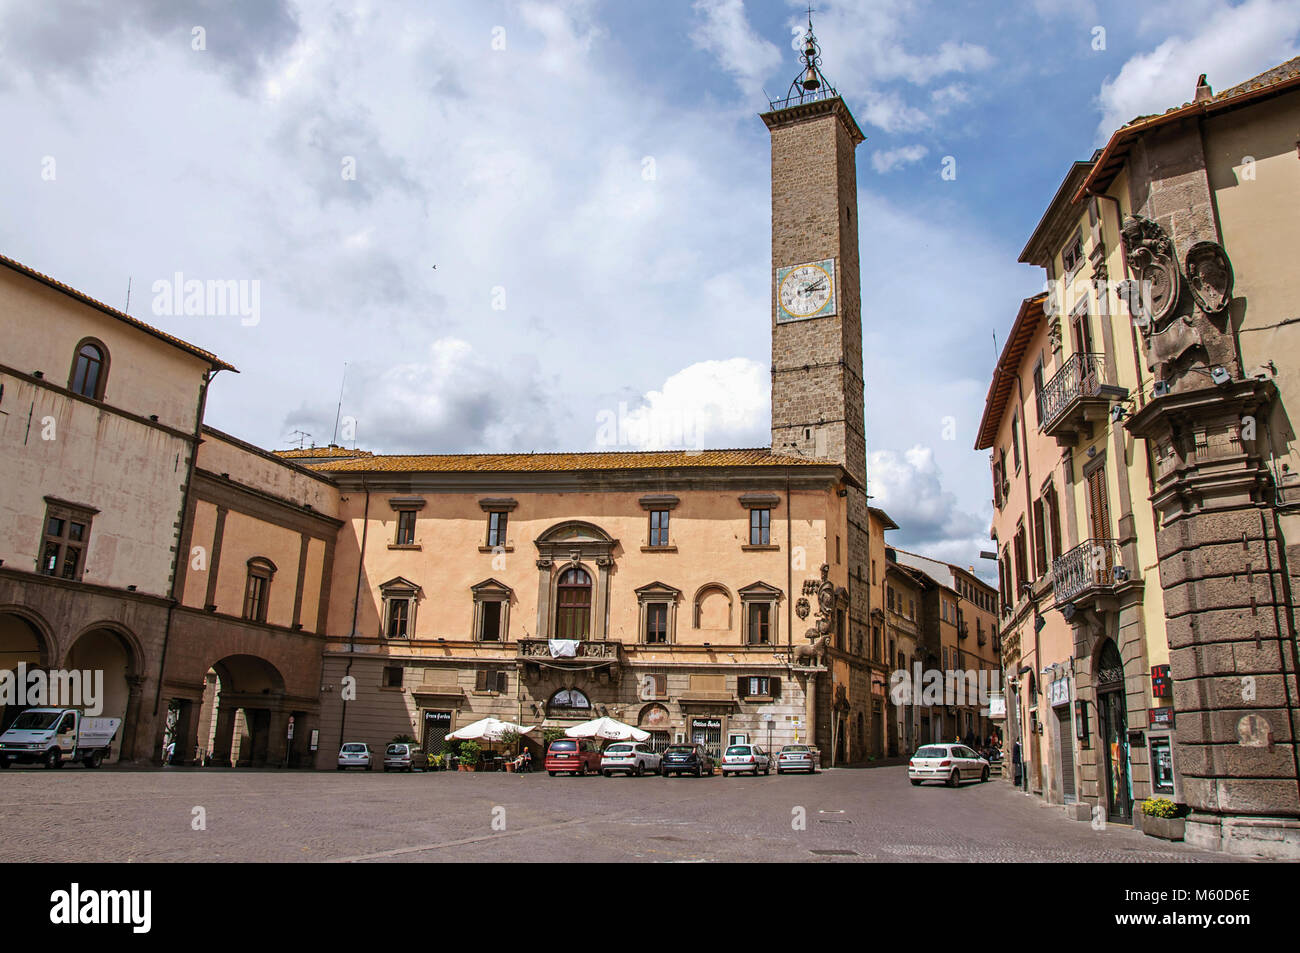 Viterbo, Italia - 20 maggio 2013. Vista della piazza con i suoi antichi edifici e torre campanaria nel centro della città di Viterbo, una ridente cittadina a nord di Roma. Foto Stock